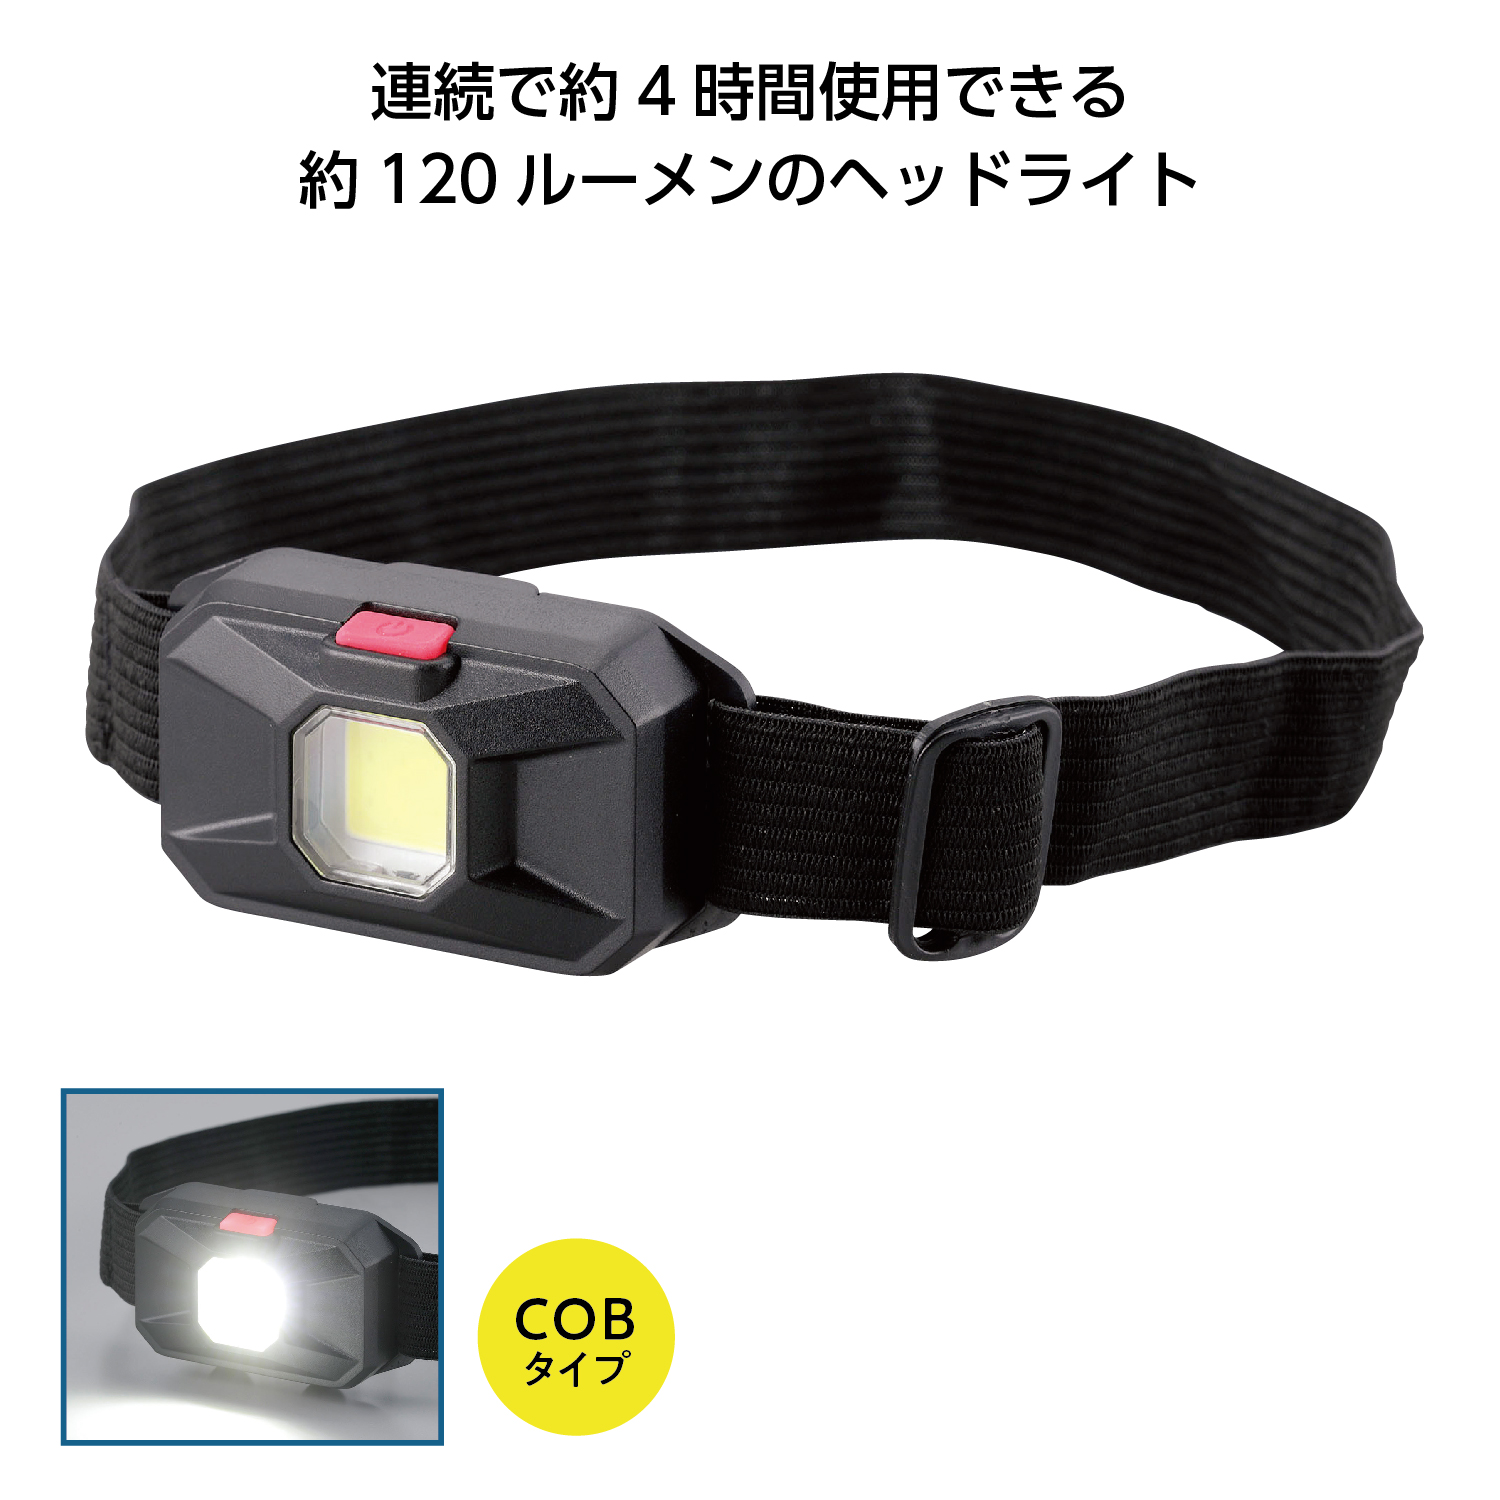 COB LEDヘッドライト コンパクトタイプ